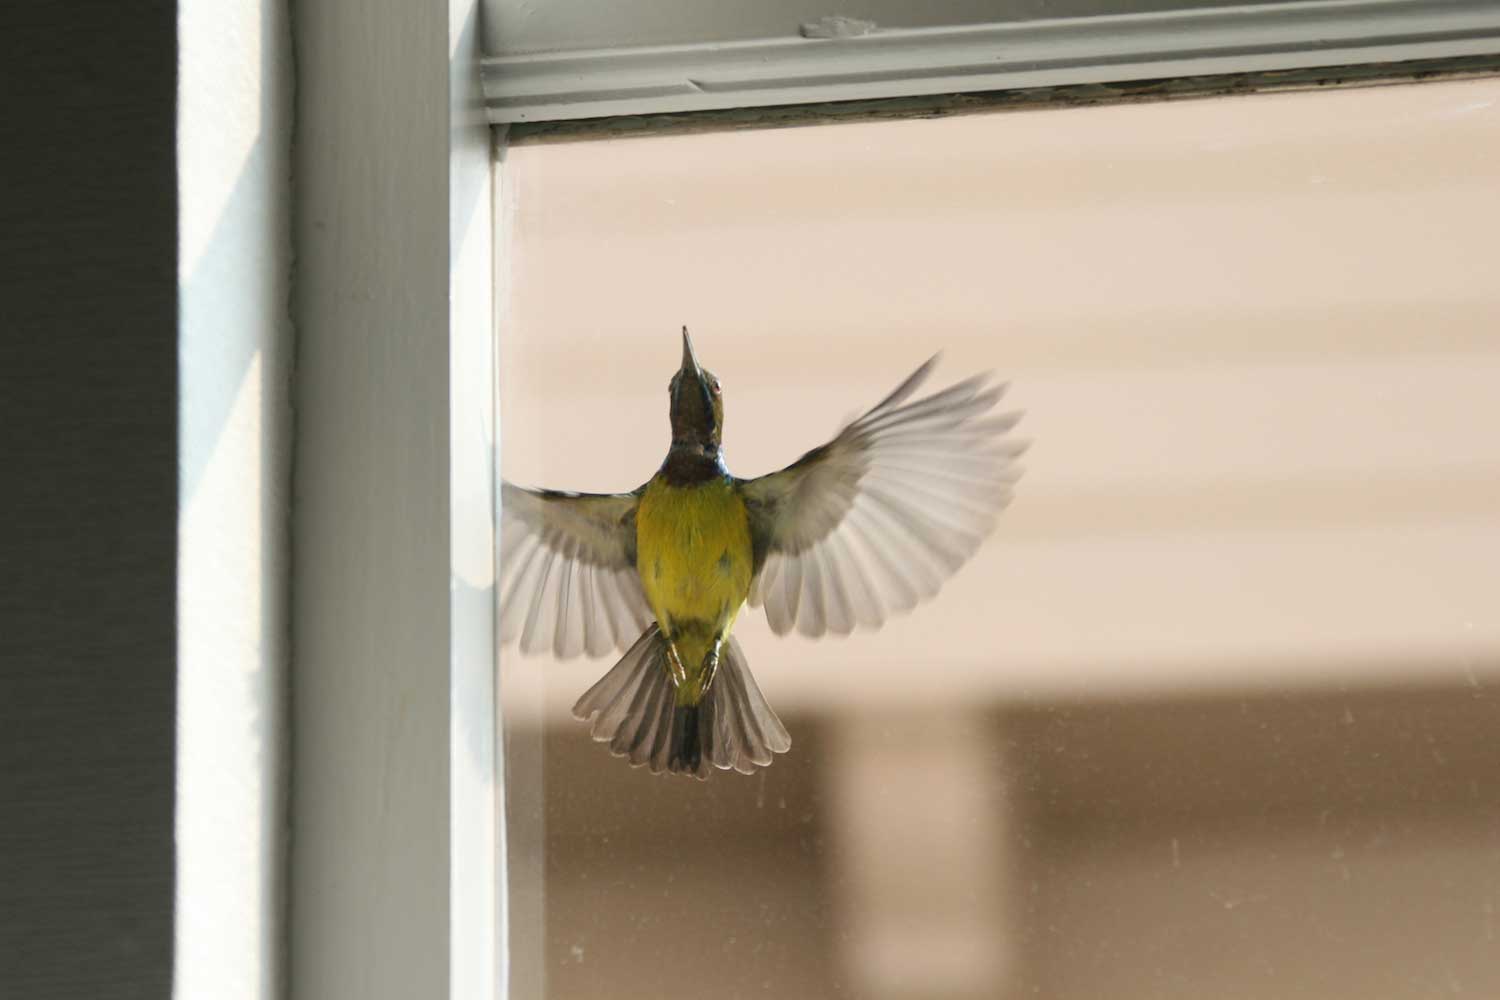 Nature curiosity: How do birds learn to fly?